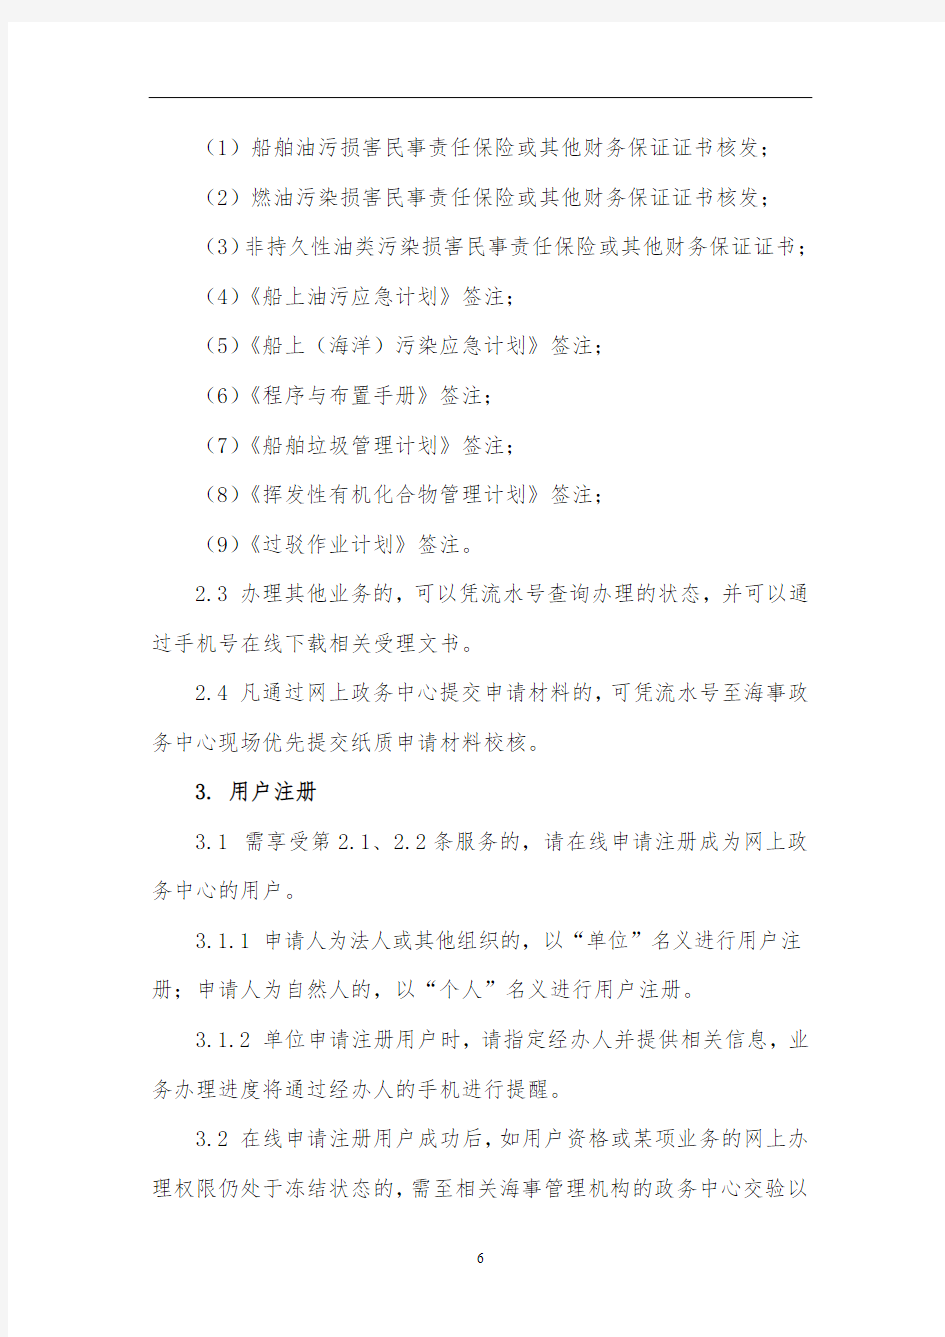 上海海事局网上政务中心使用须知【模板】